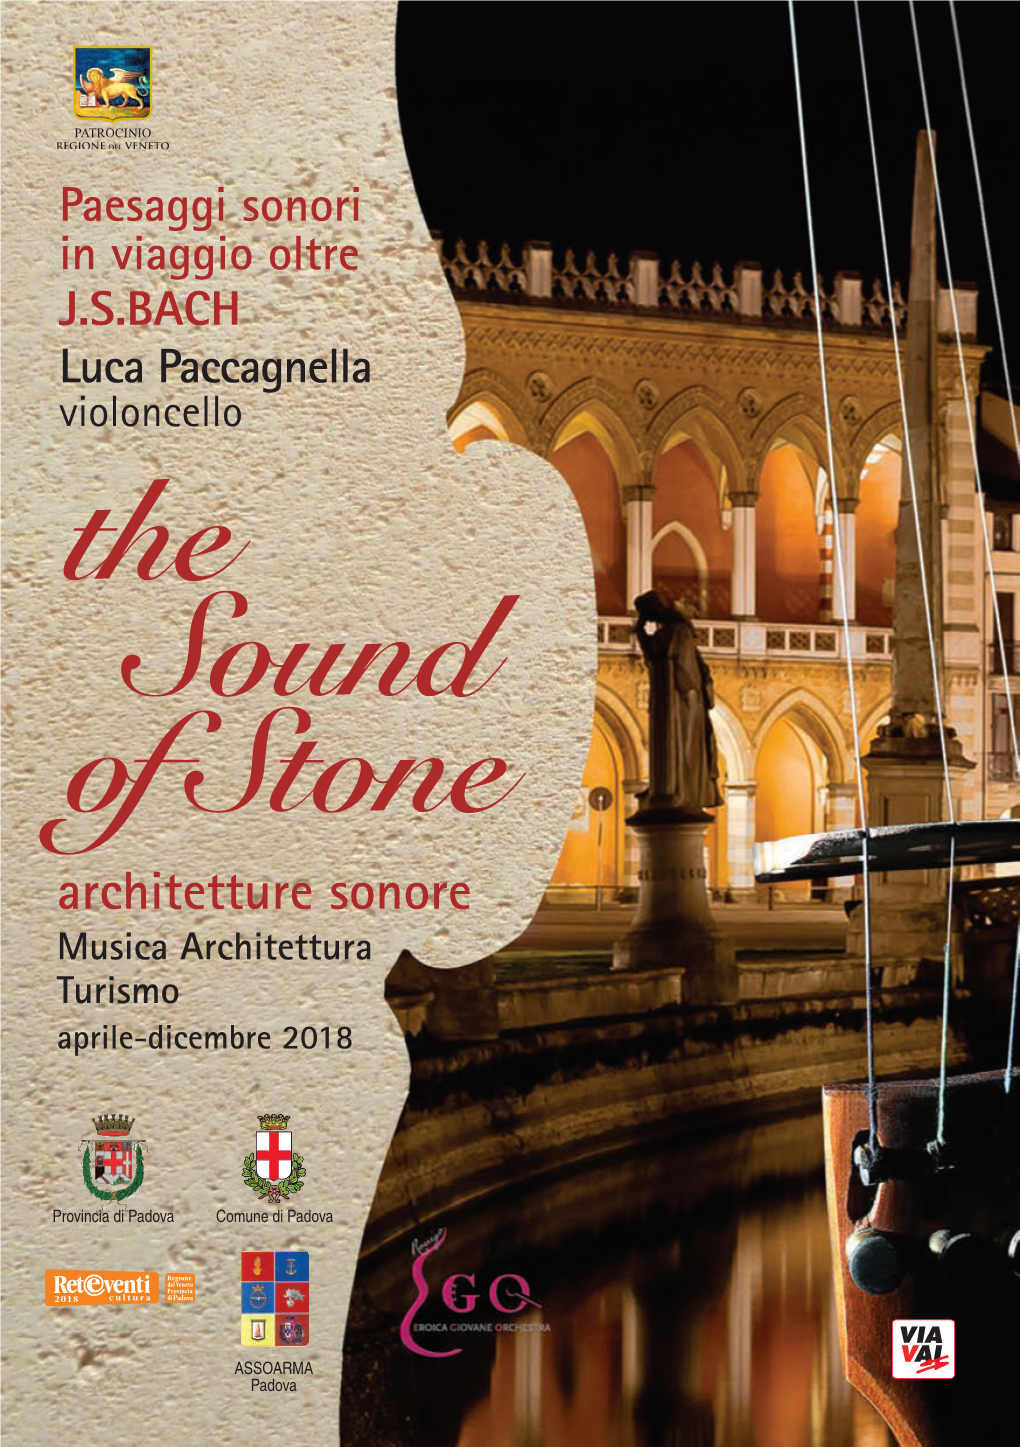 Luca Paccagnella Violoncello the Sound of Stone Architetture Sonore Musica Architettura Turismo Aprile-Dicembre 2018